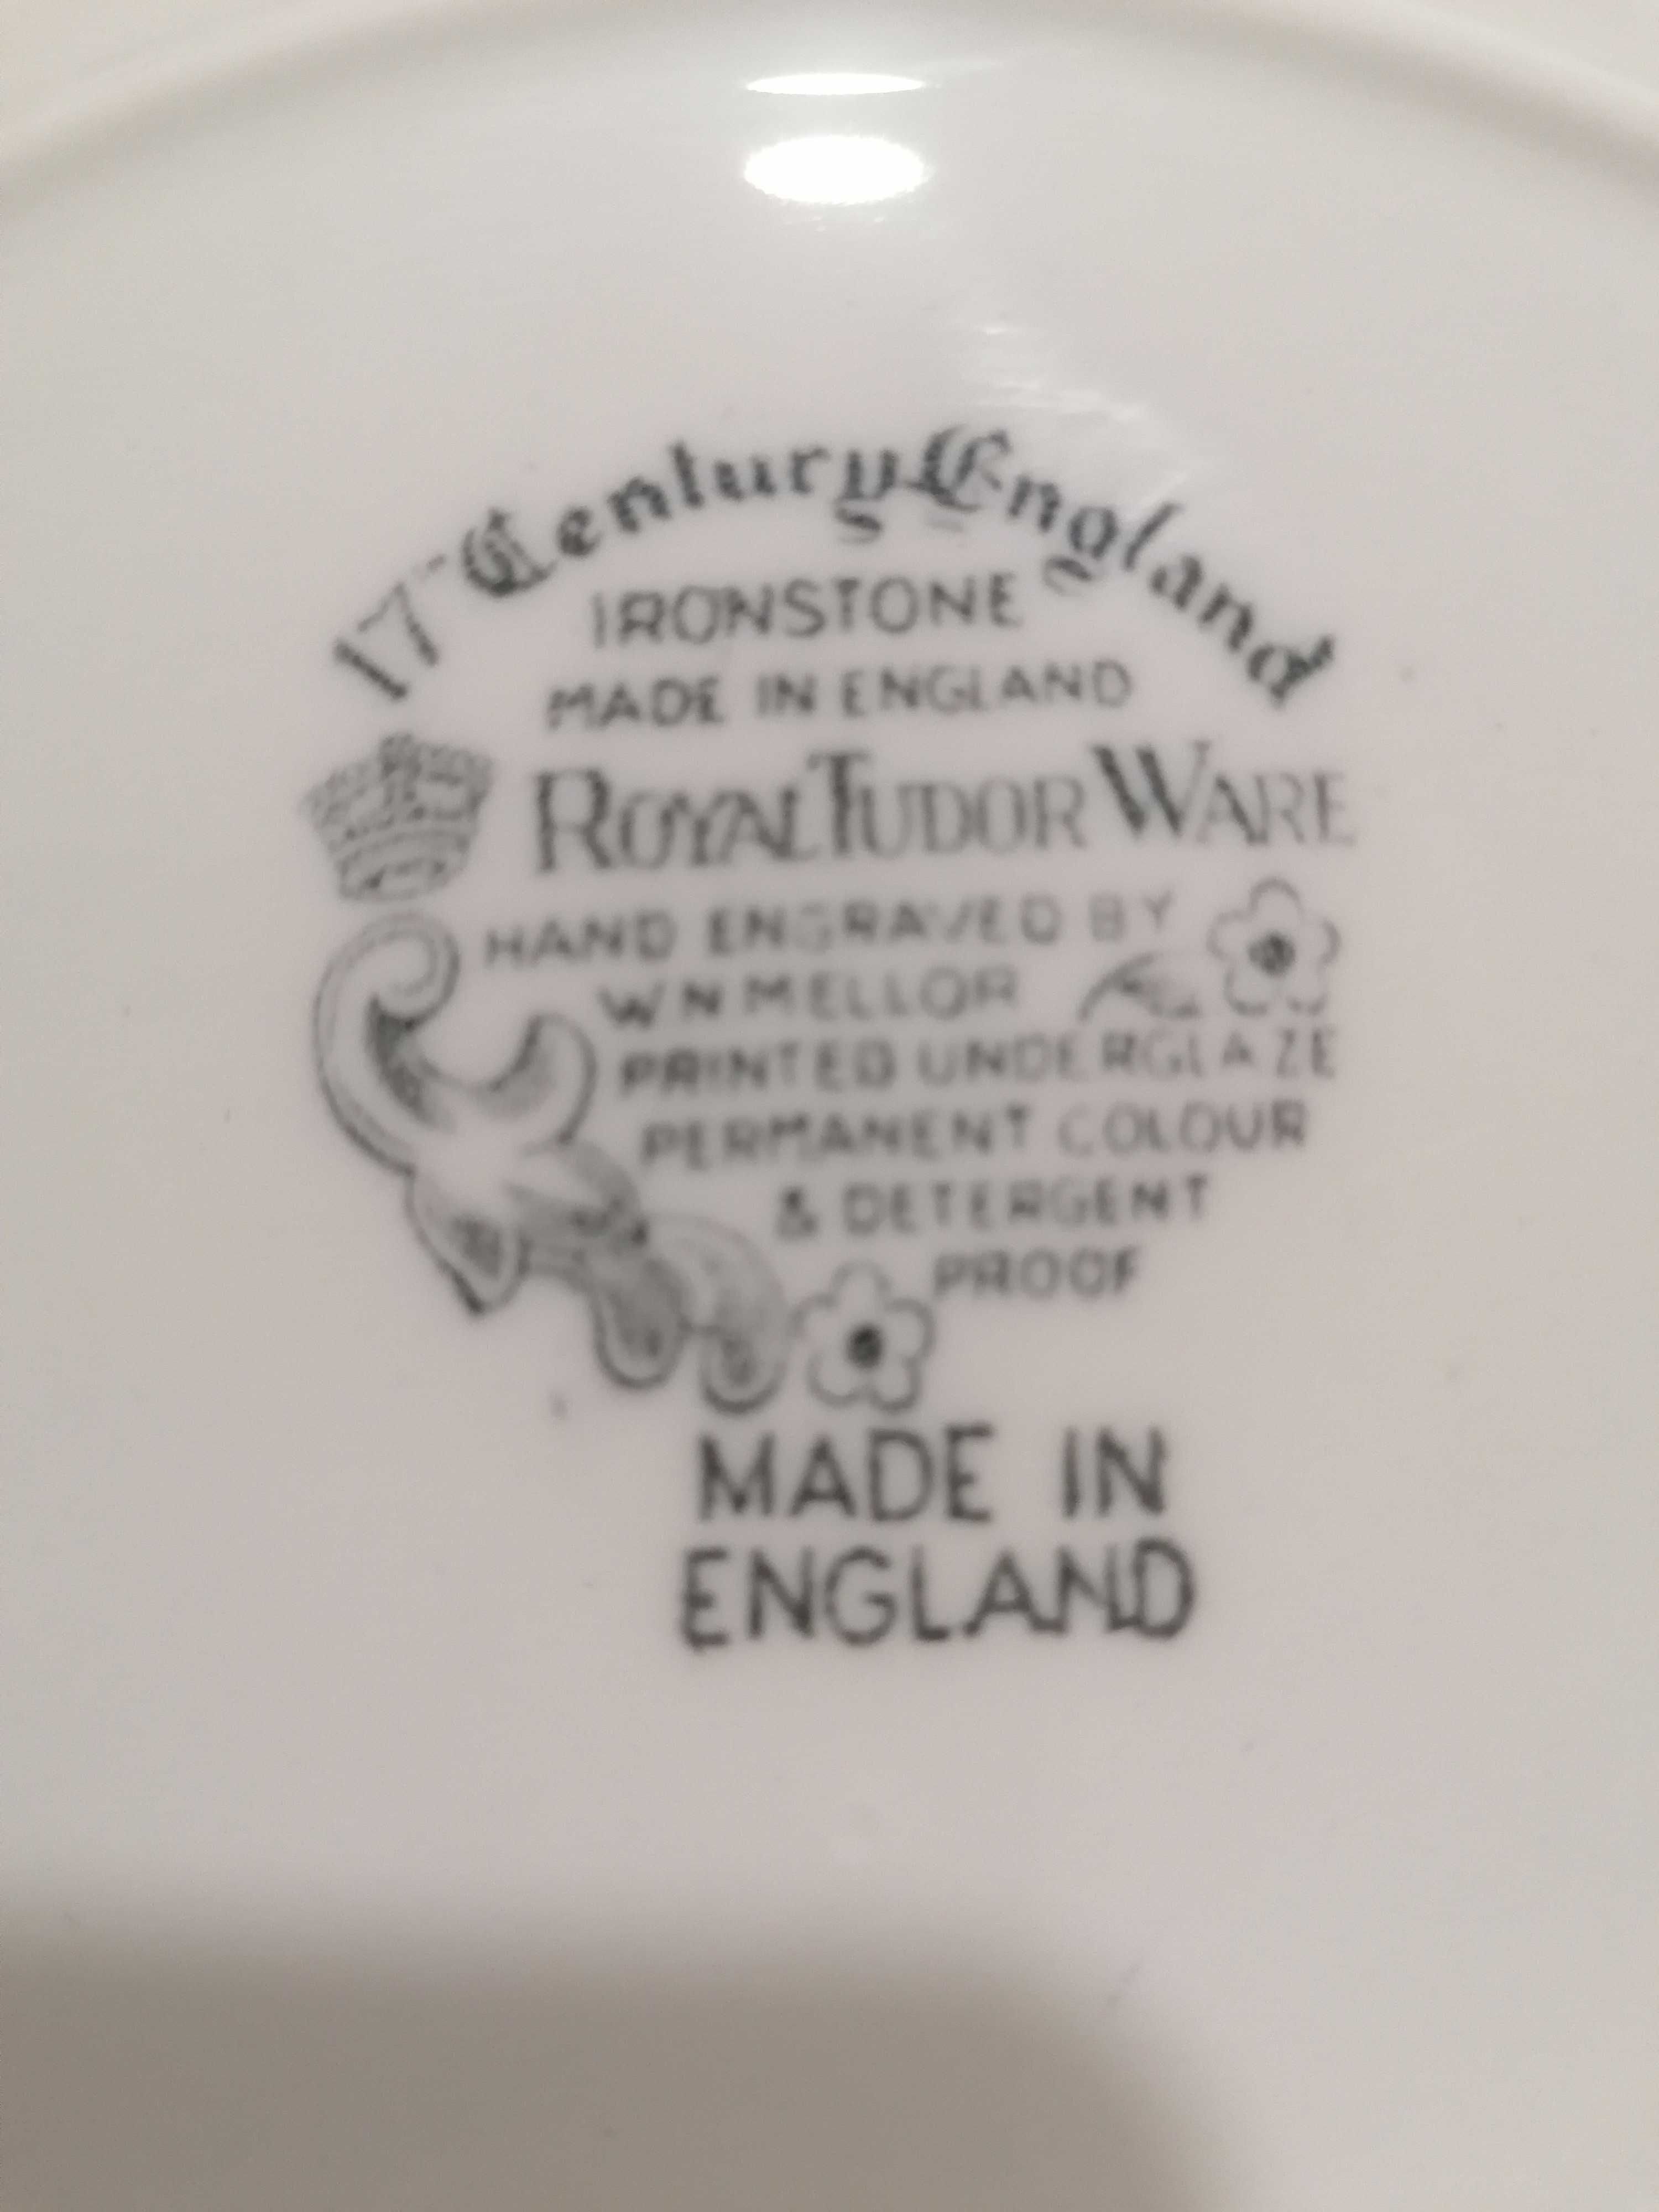 Pratos de porcelana vintage Royal Tudor Ware em bom estado.